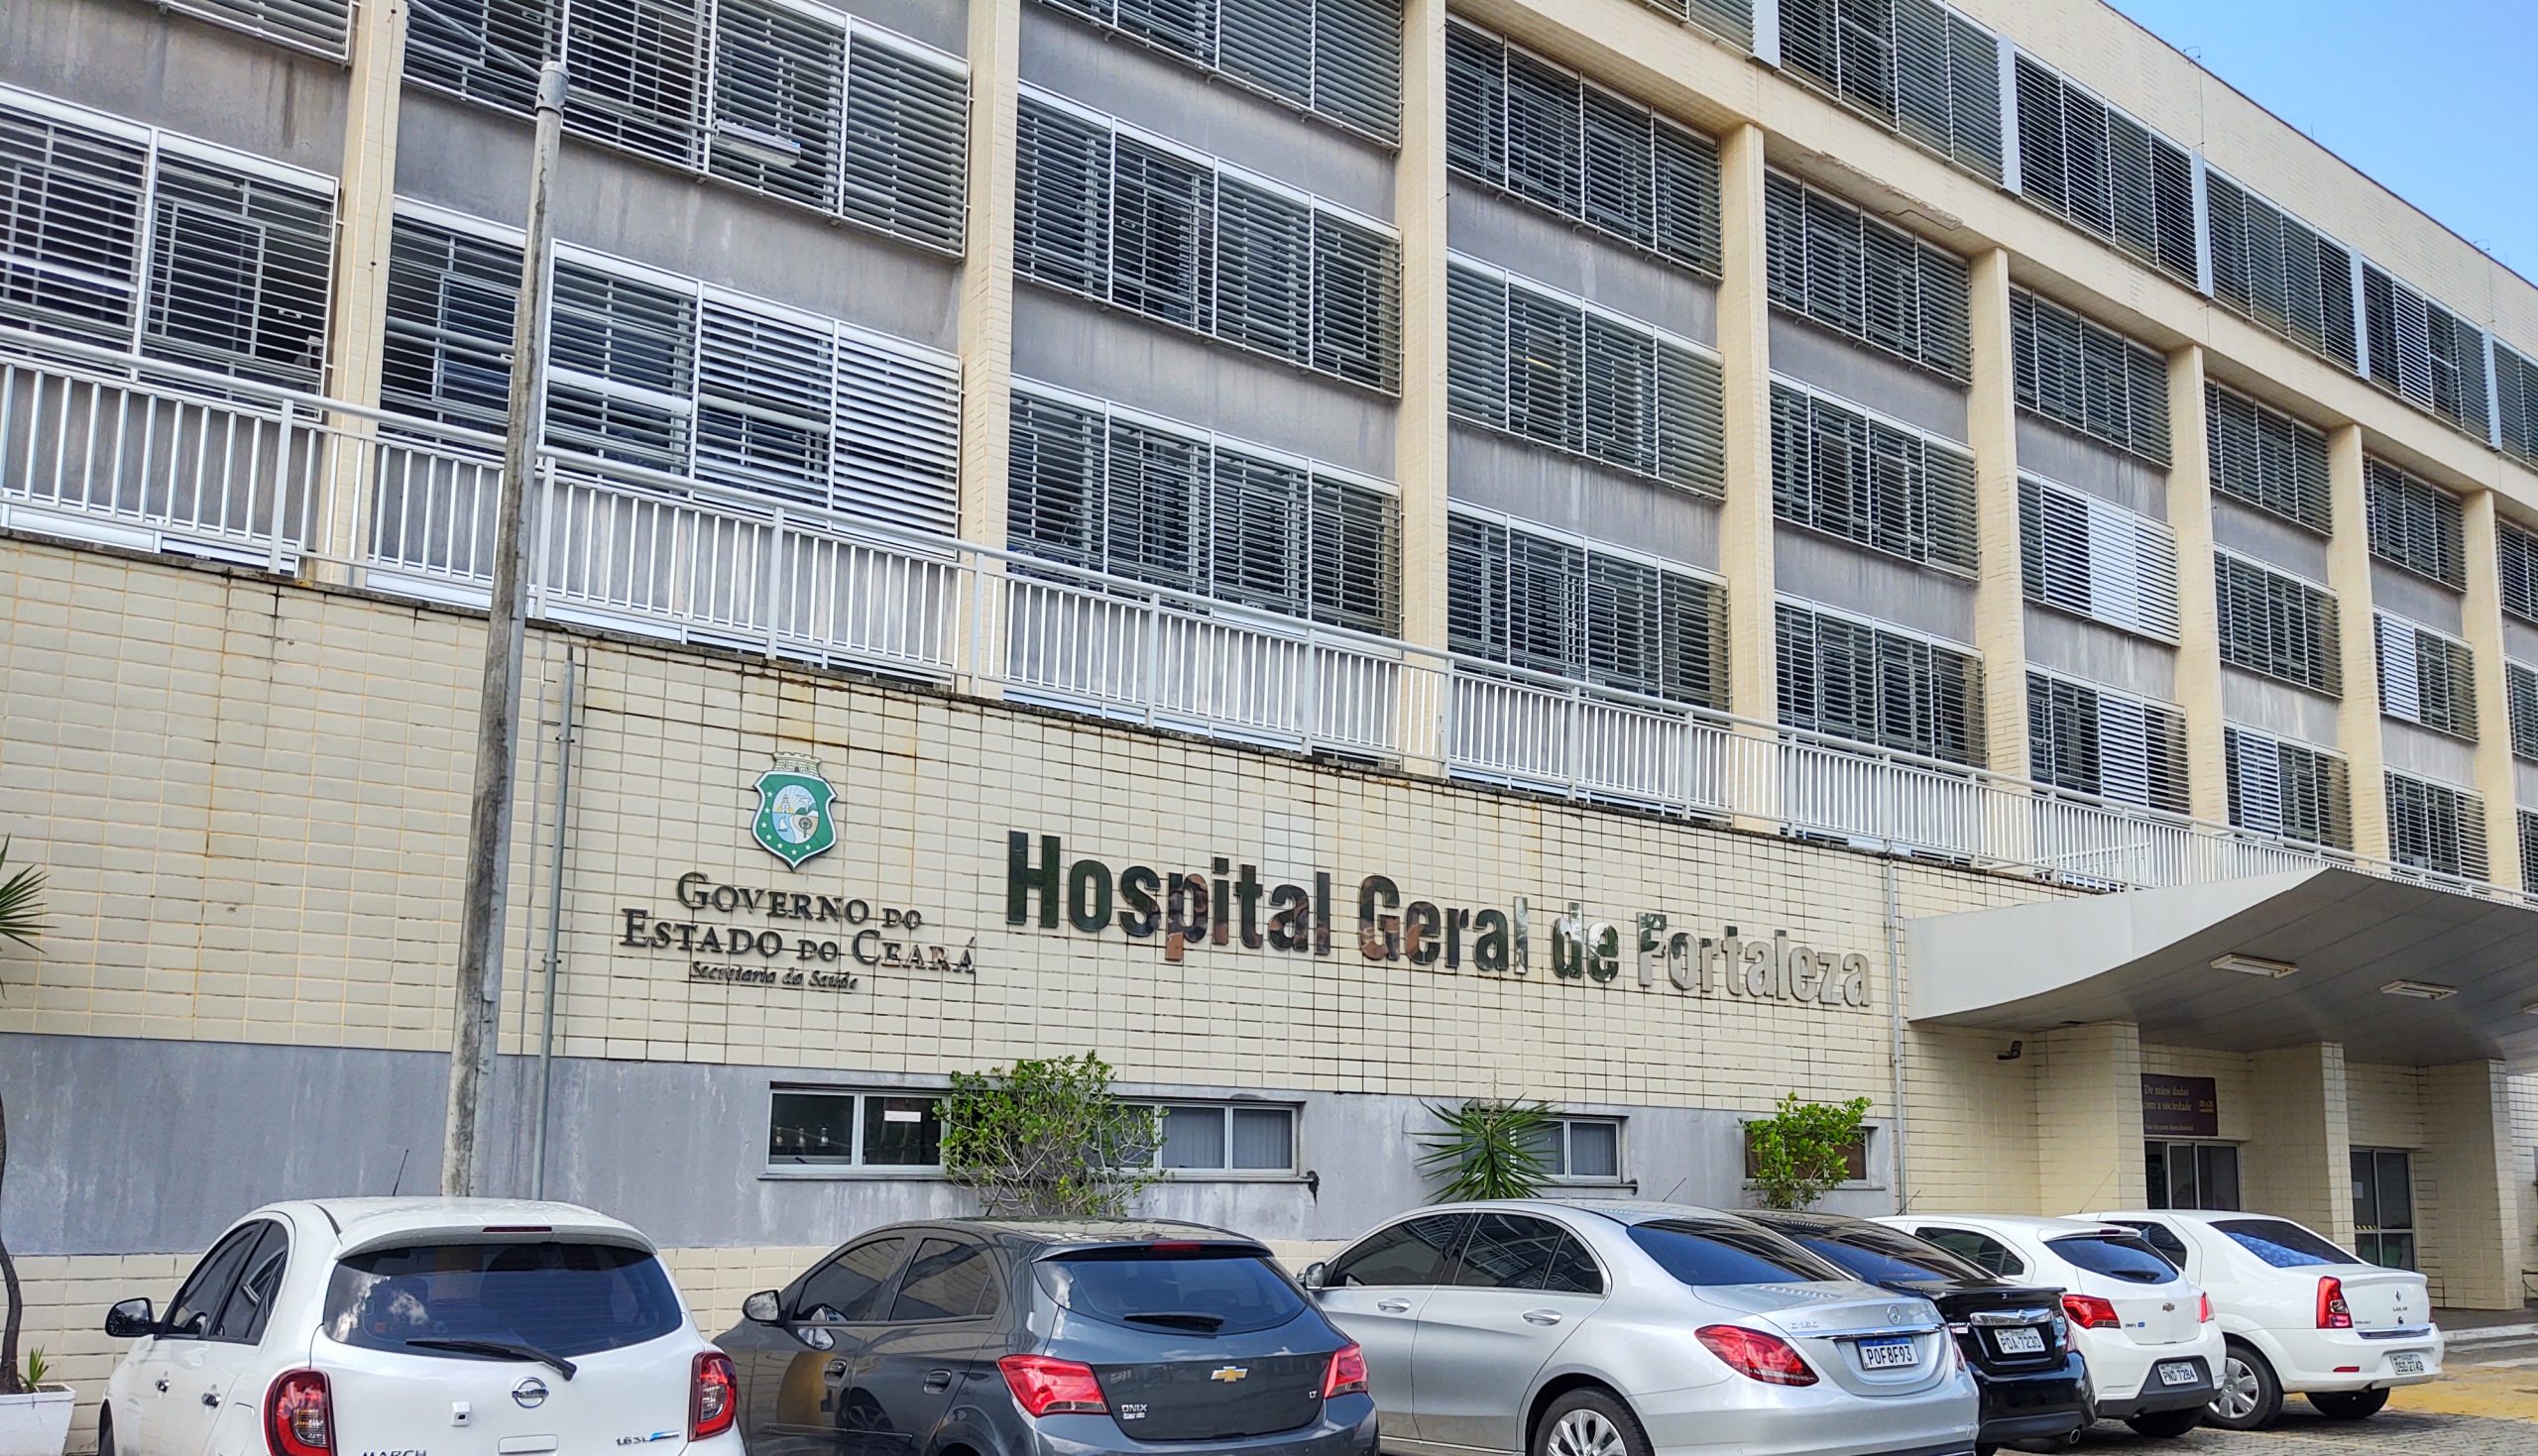 Serviço de Cuidados Paliativos do Hospital Geral de Fortaleza